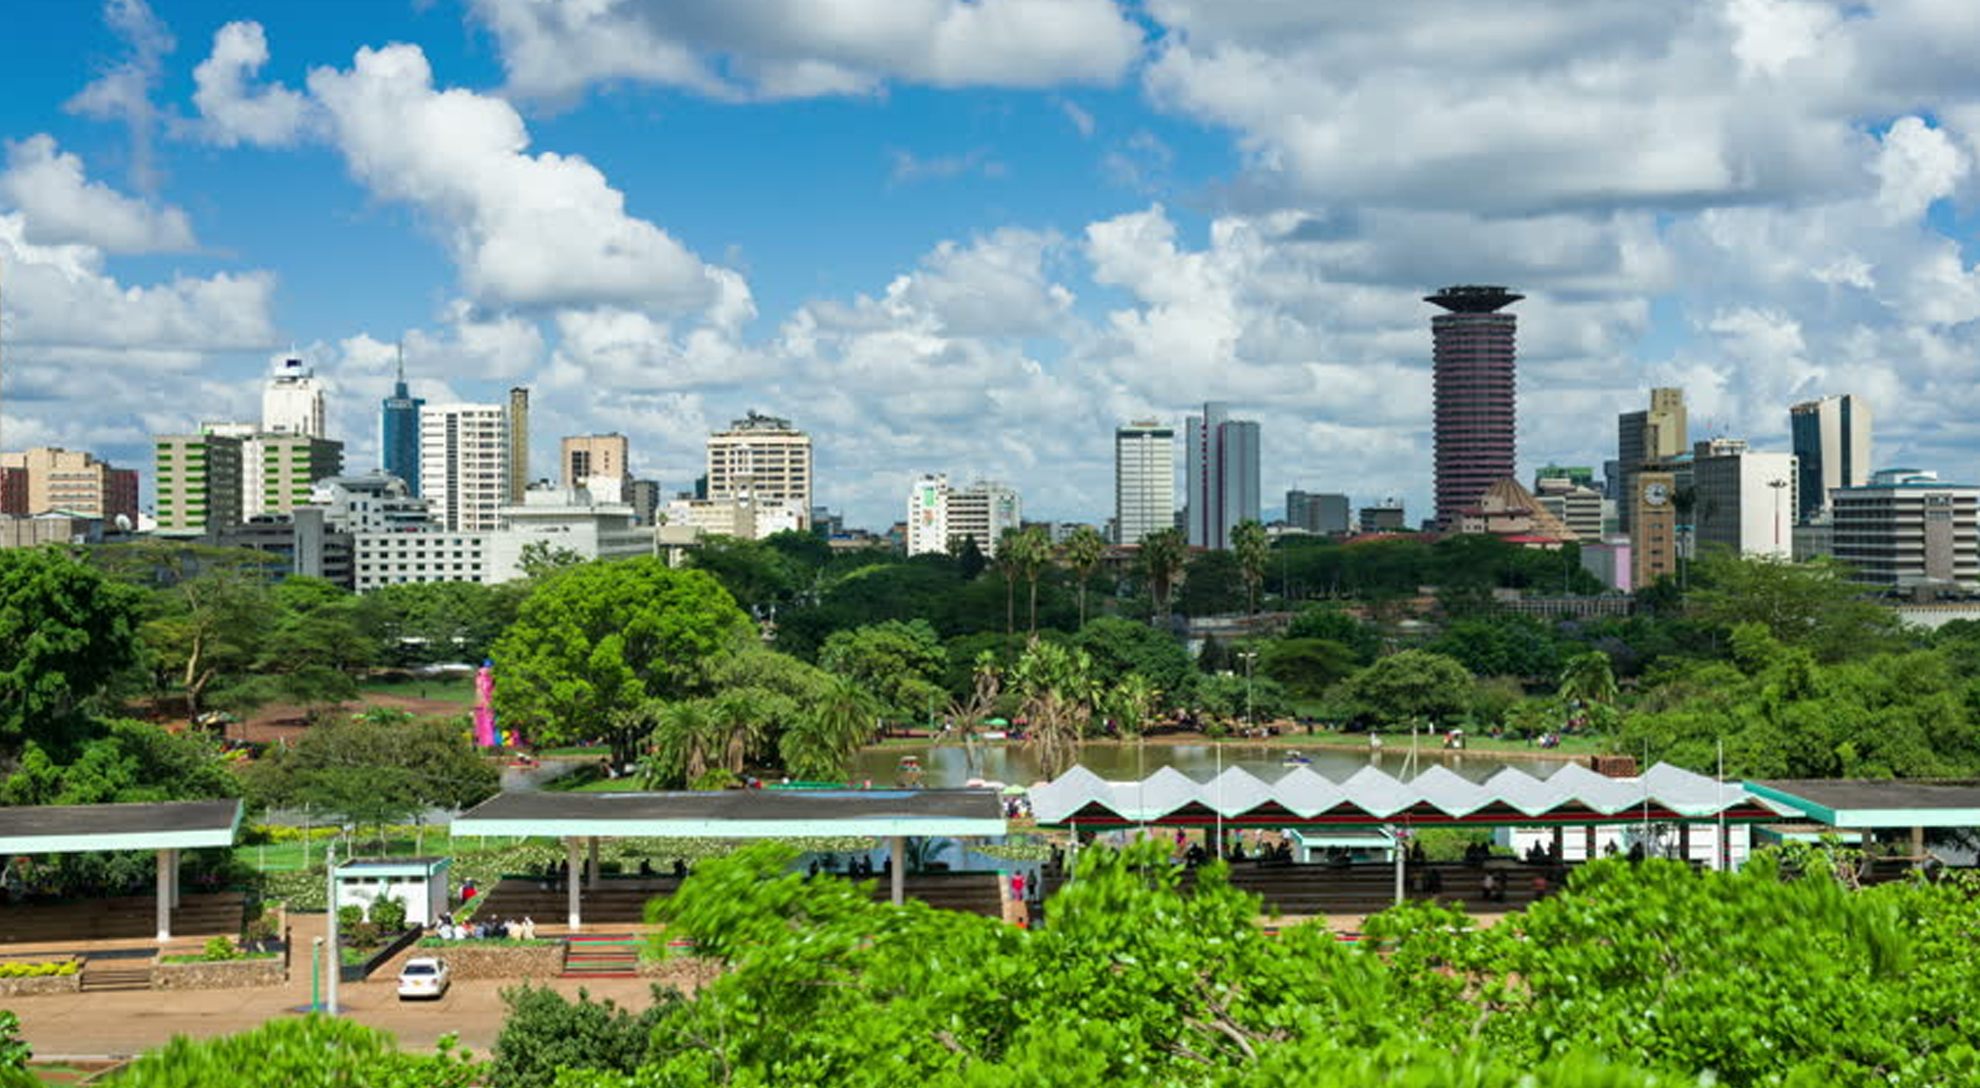 Day 1 NAIROBI, KENYA